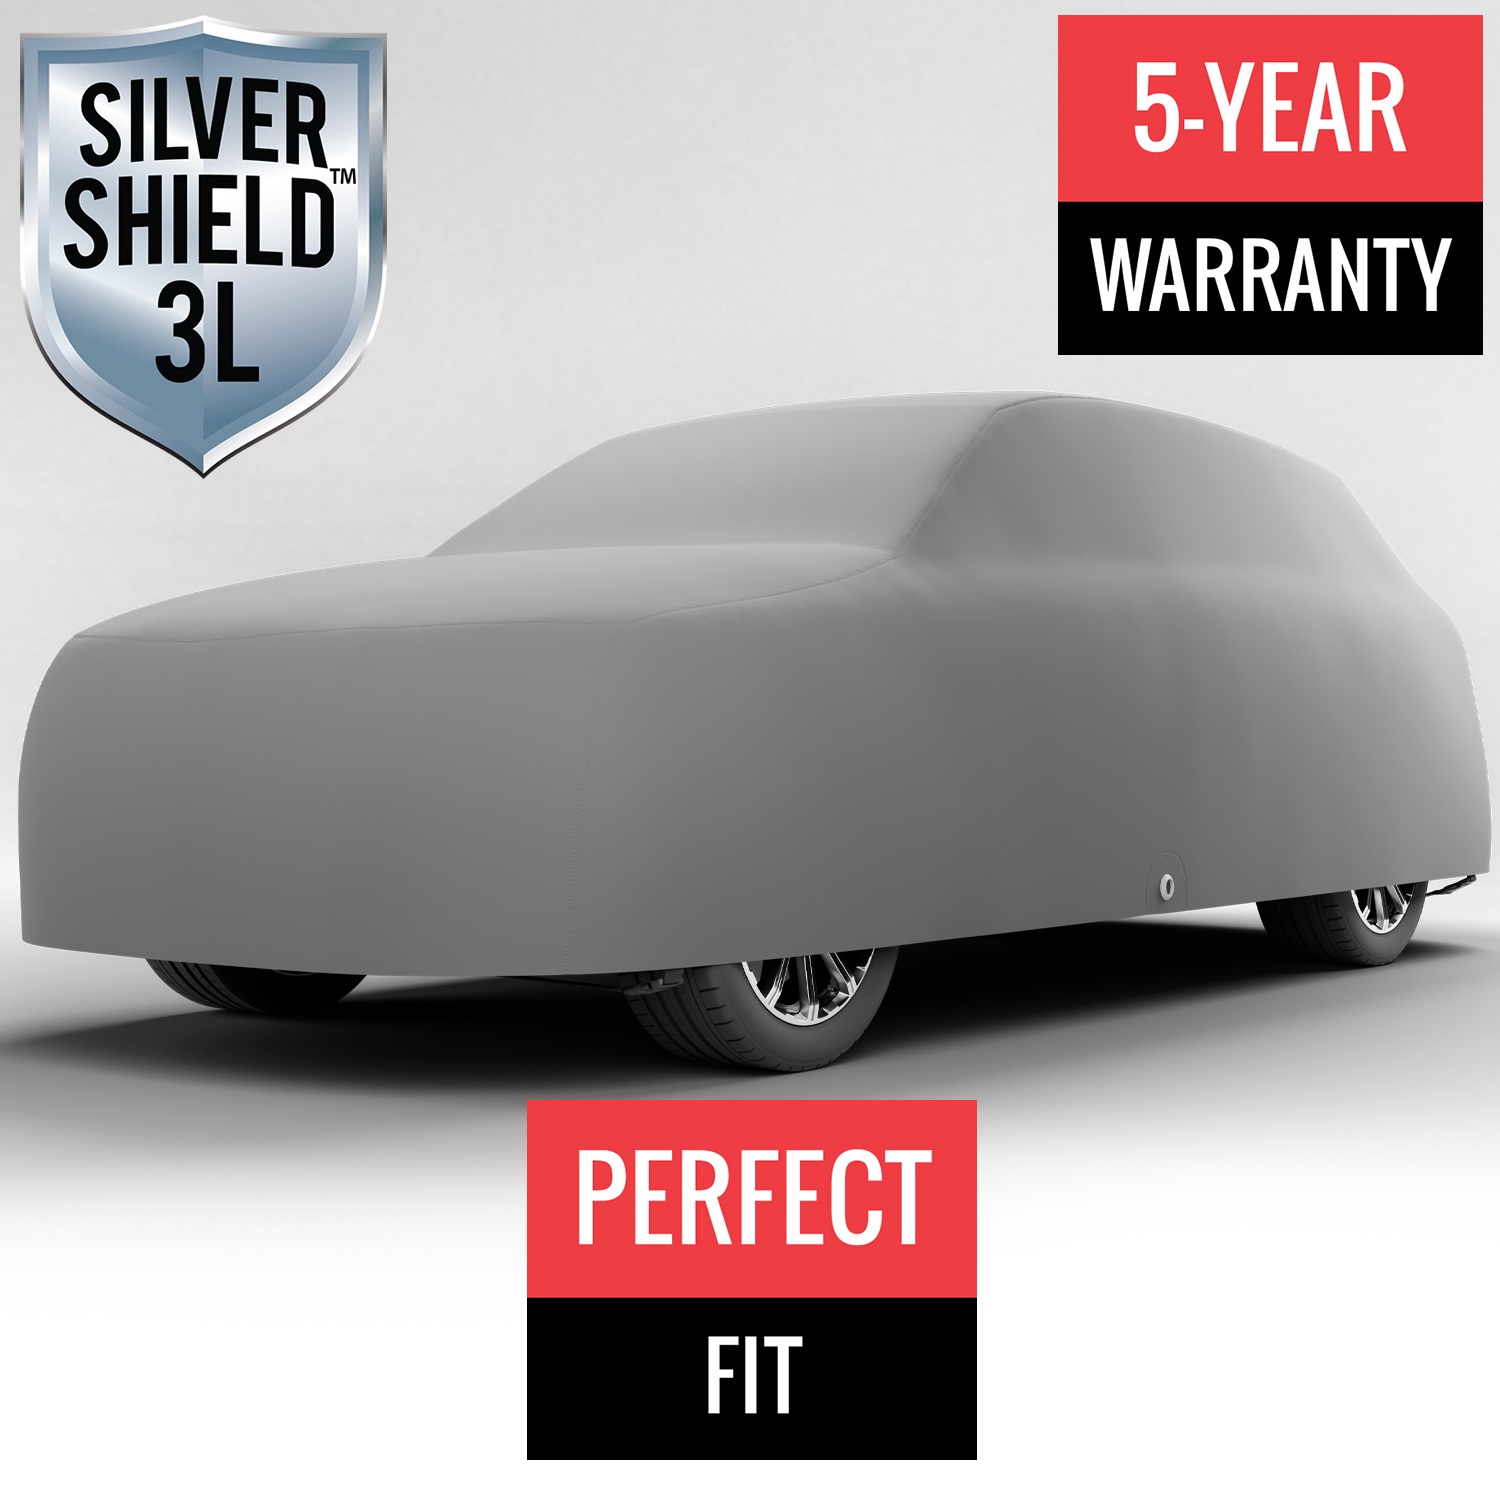 Silver Shield 3L - Car Cover for Mazda CX-9 2009 SUV 4-Door